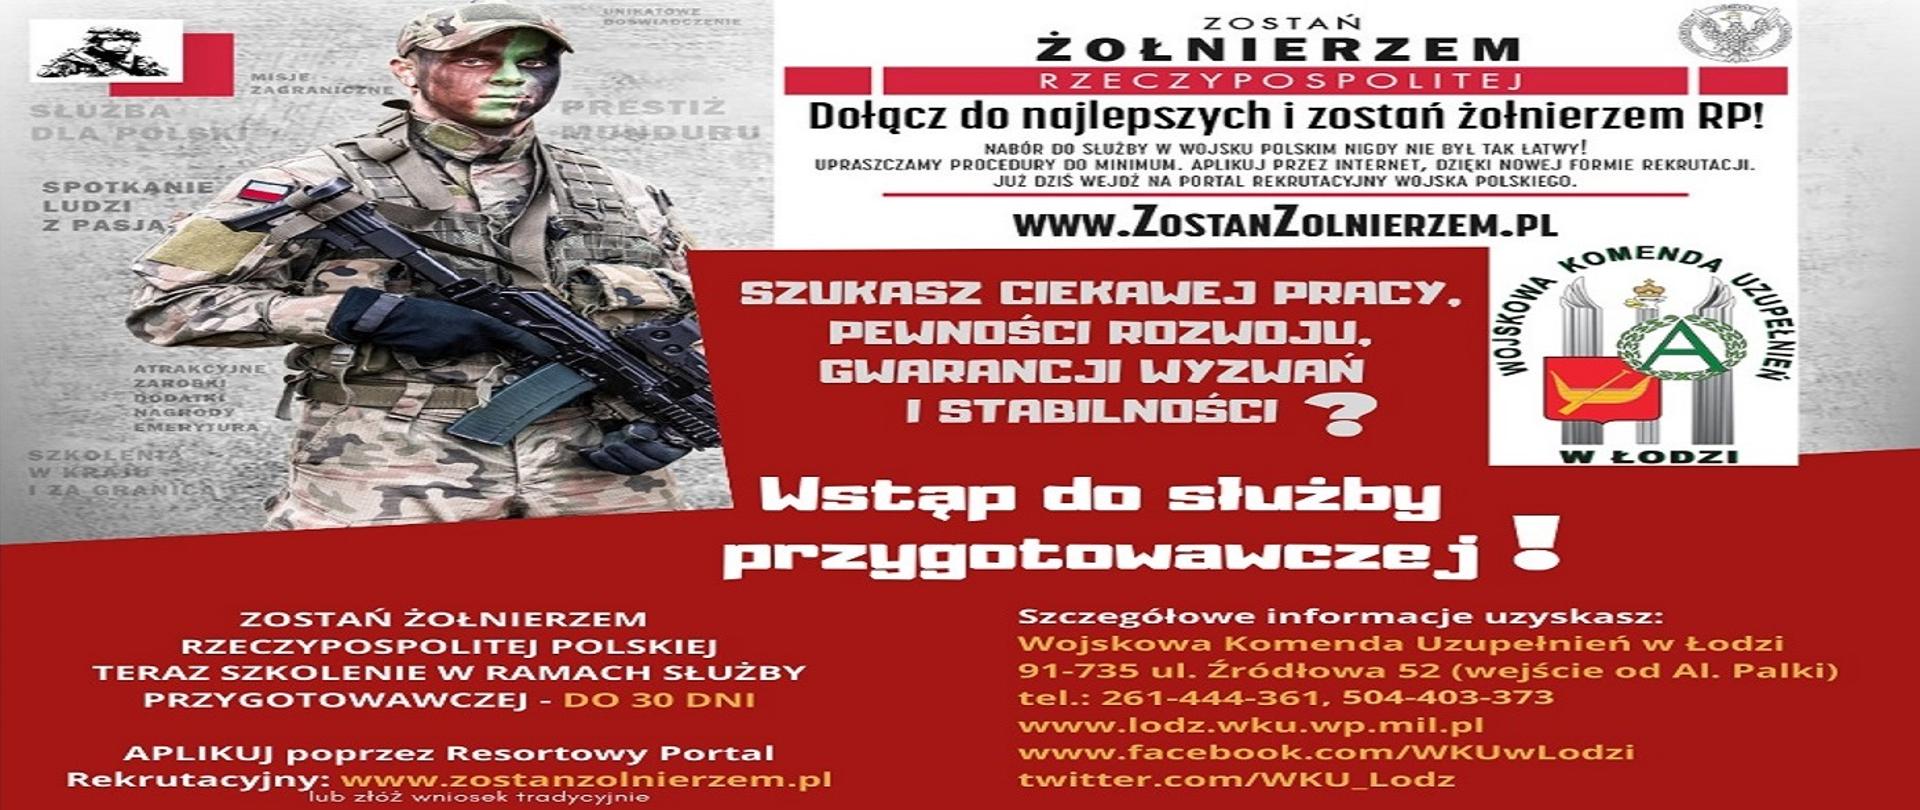 zdjęcie przedstawia plakat promujący akcję "Zostań Żołnierzem Rzeczypospolitej". na plakacie widoczny jest żołnierz WP RP z karabinem, logo WKU Łódź. 